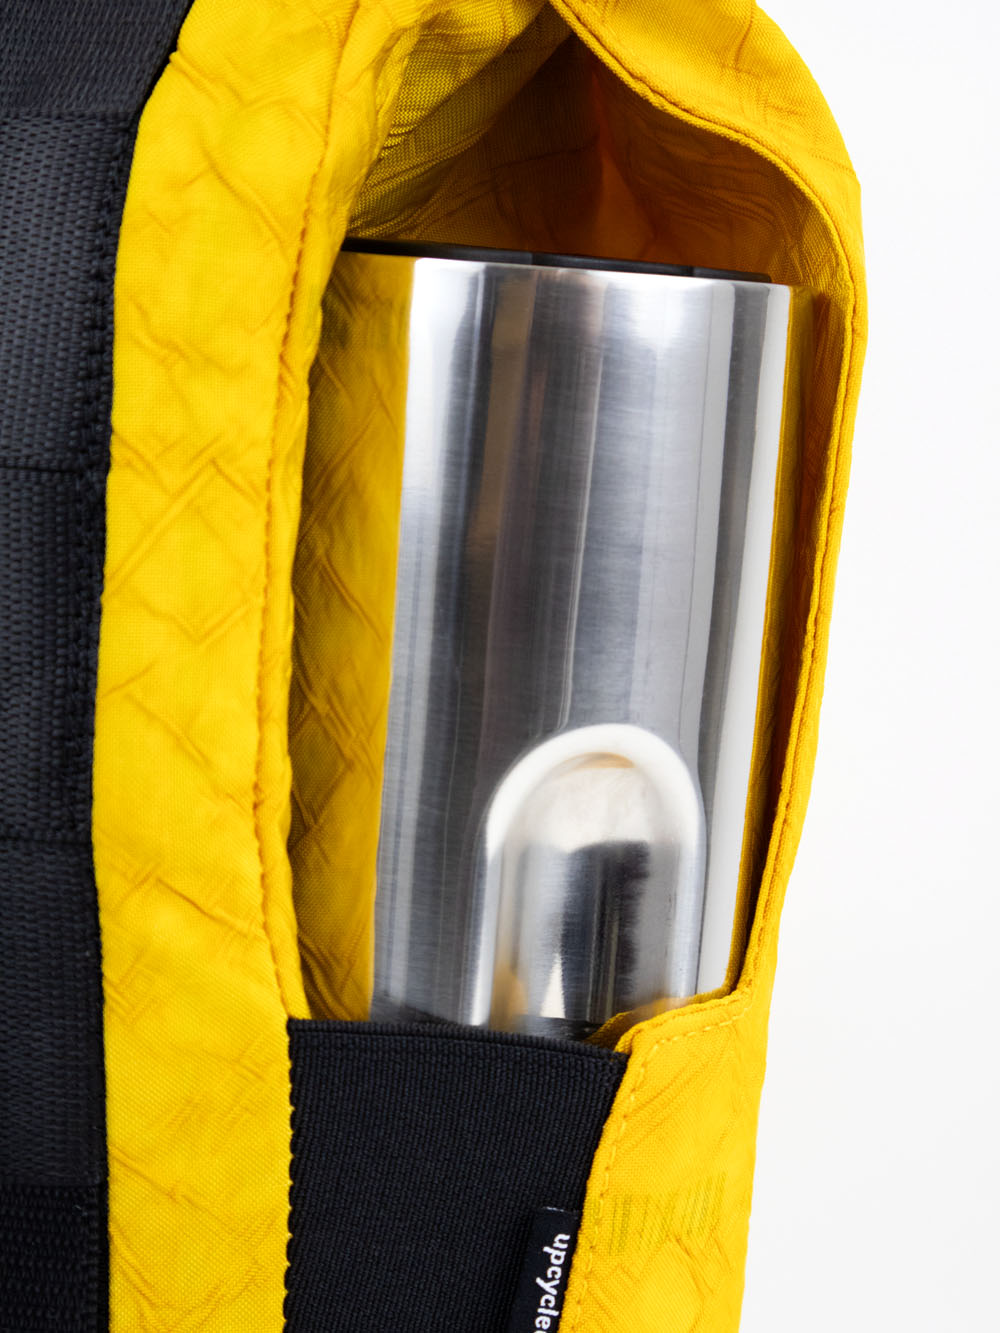 Airpaq sac à dos roll top - couleur jaune 